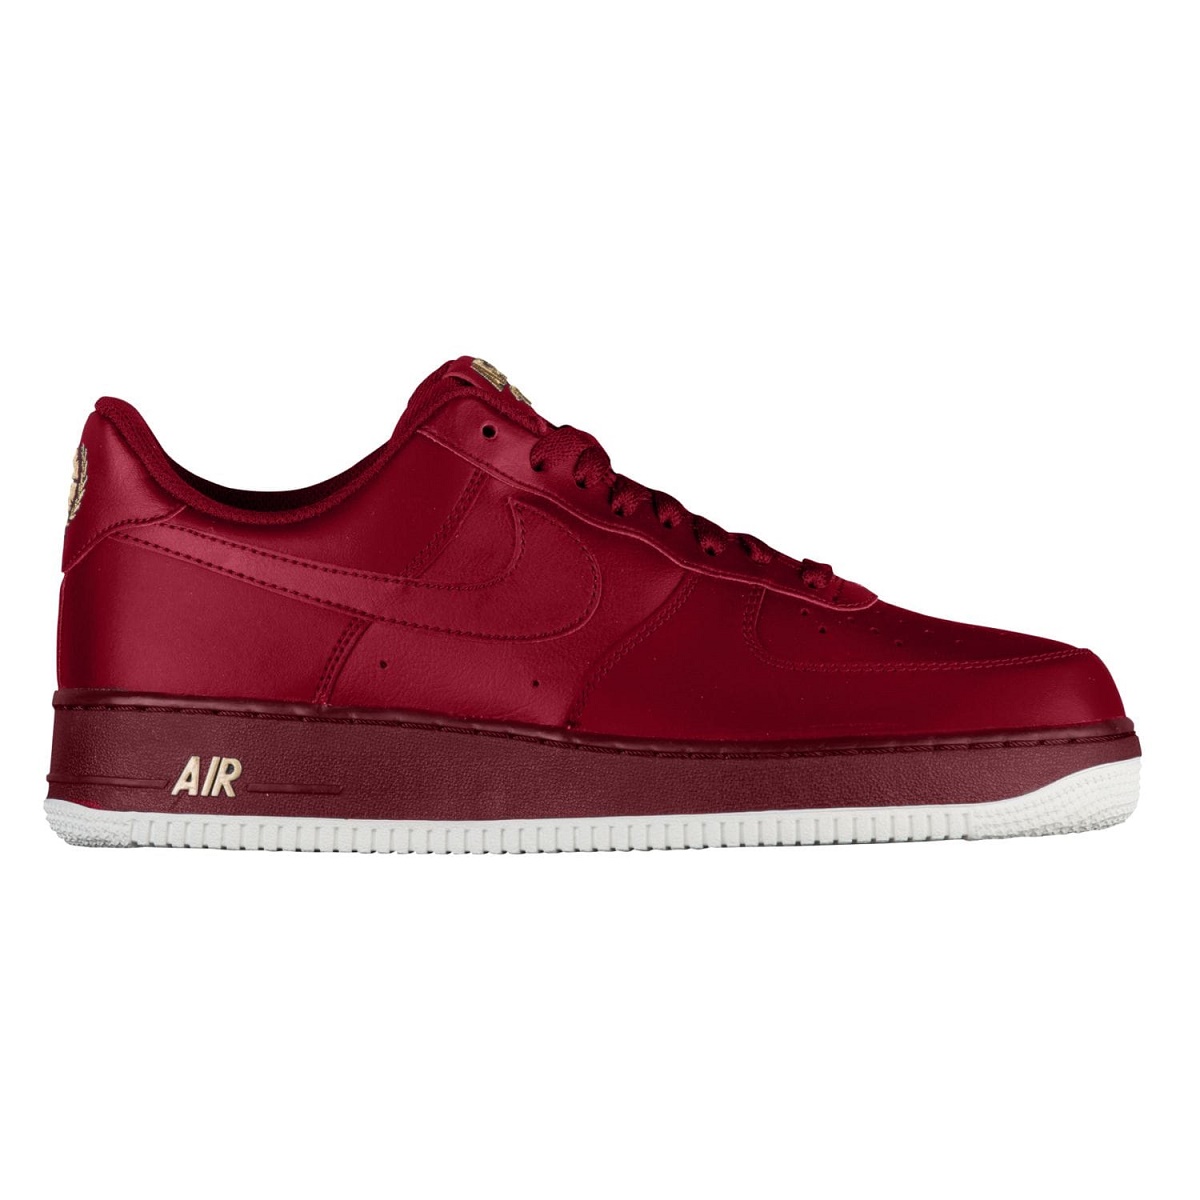 giay-Nike-AIR-FORCE-1-07-nam-chinh-hang-tai-tphcm-AA4083-603-king-shoes-sneaker-tan-binh